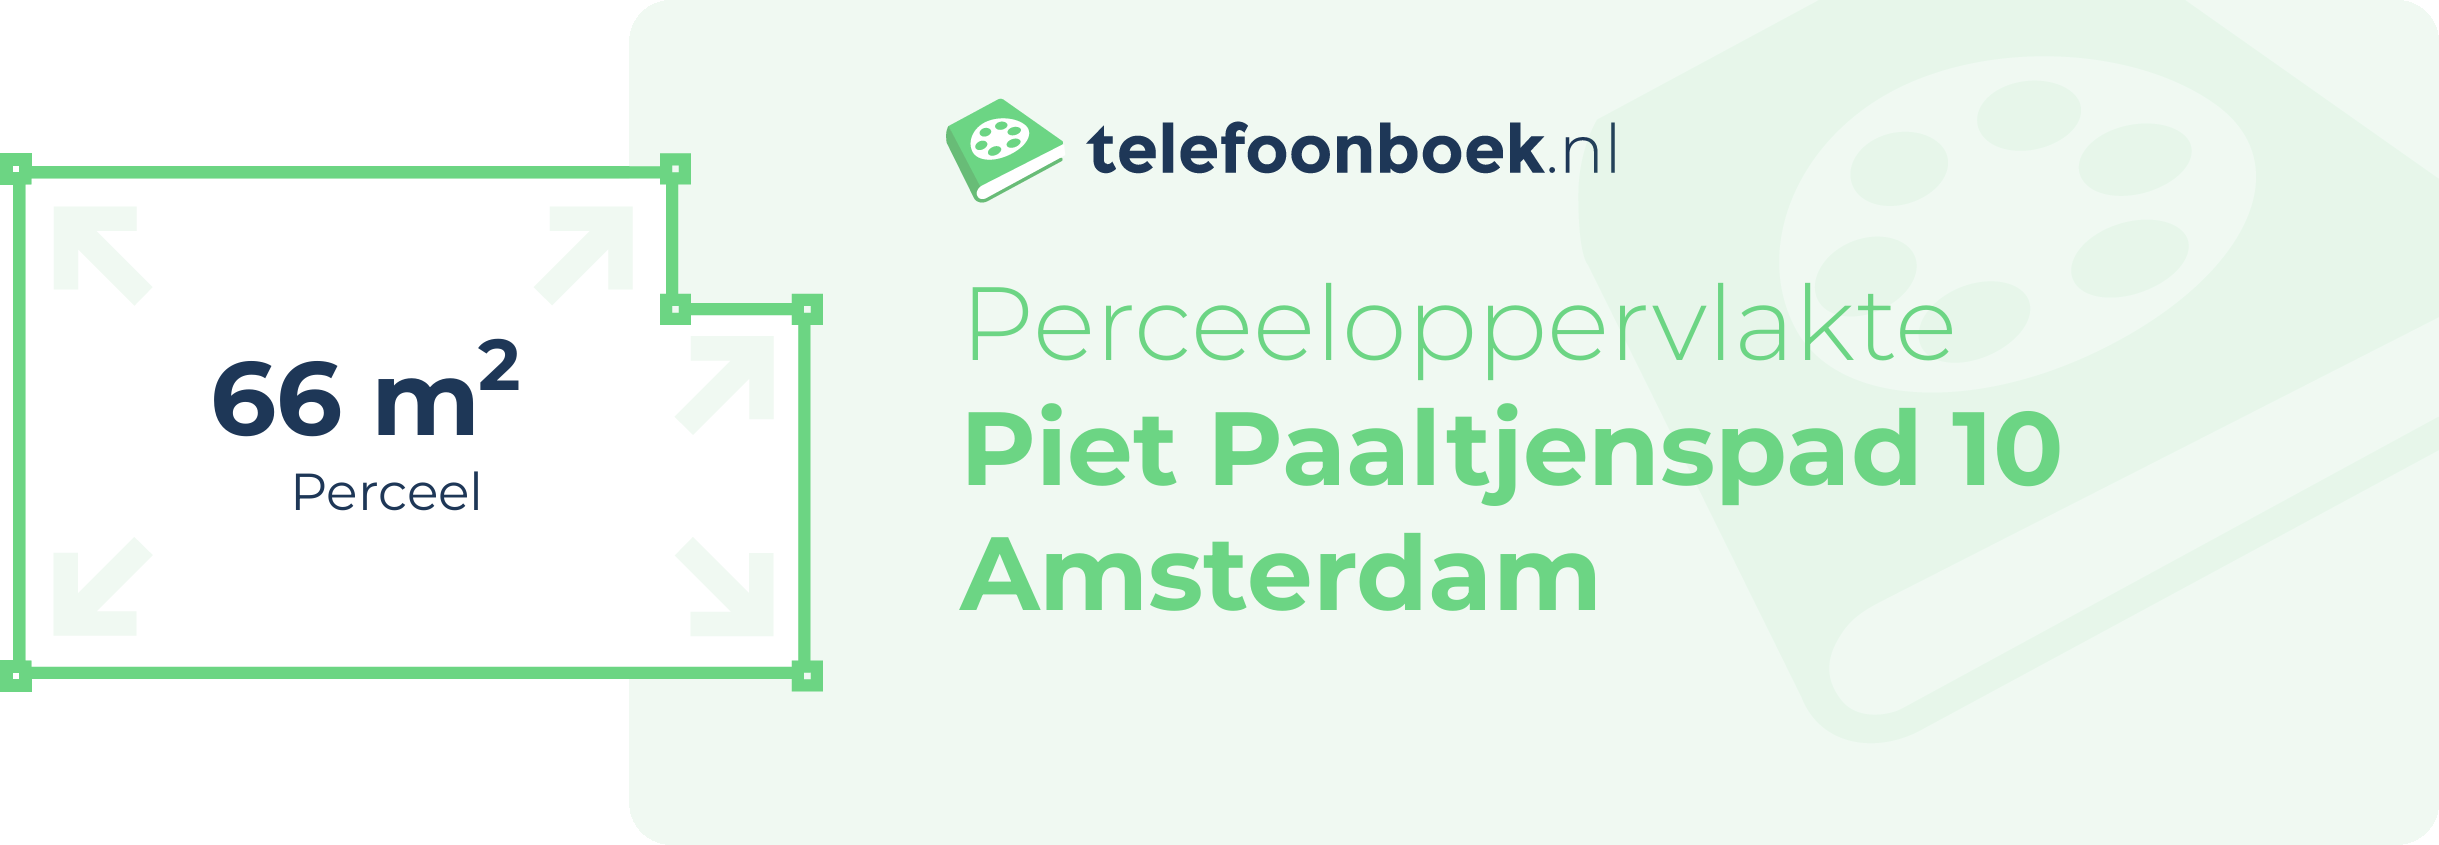 Perceeloppervlakte Piet Paaltjenspad 10 Amsterdam